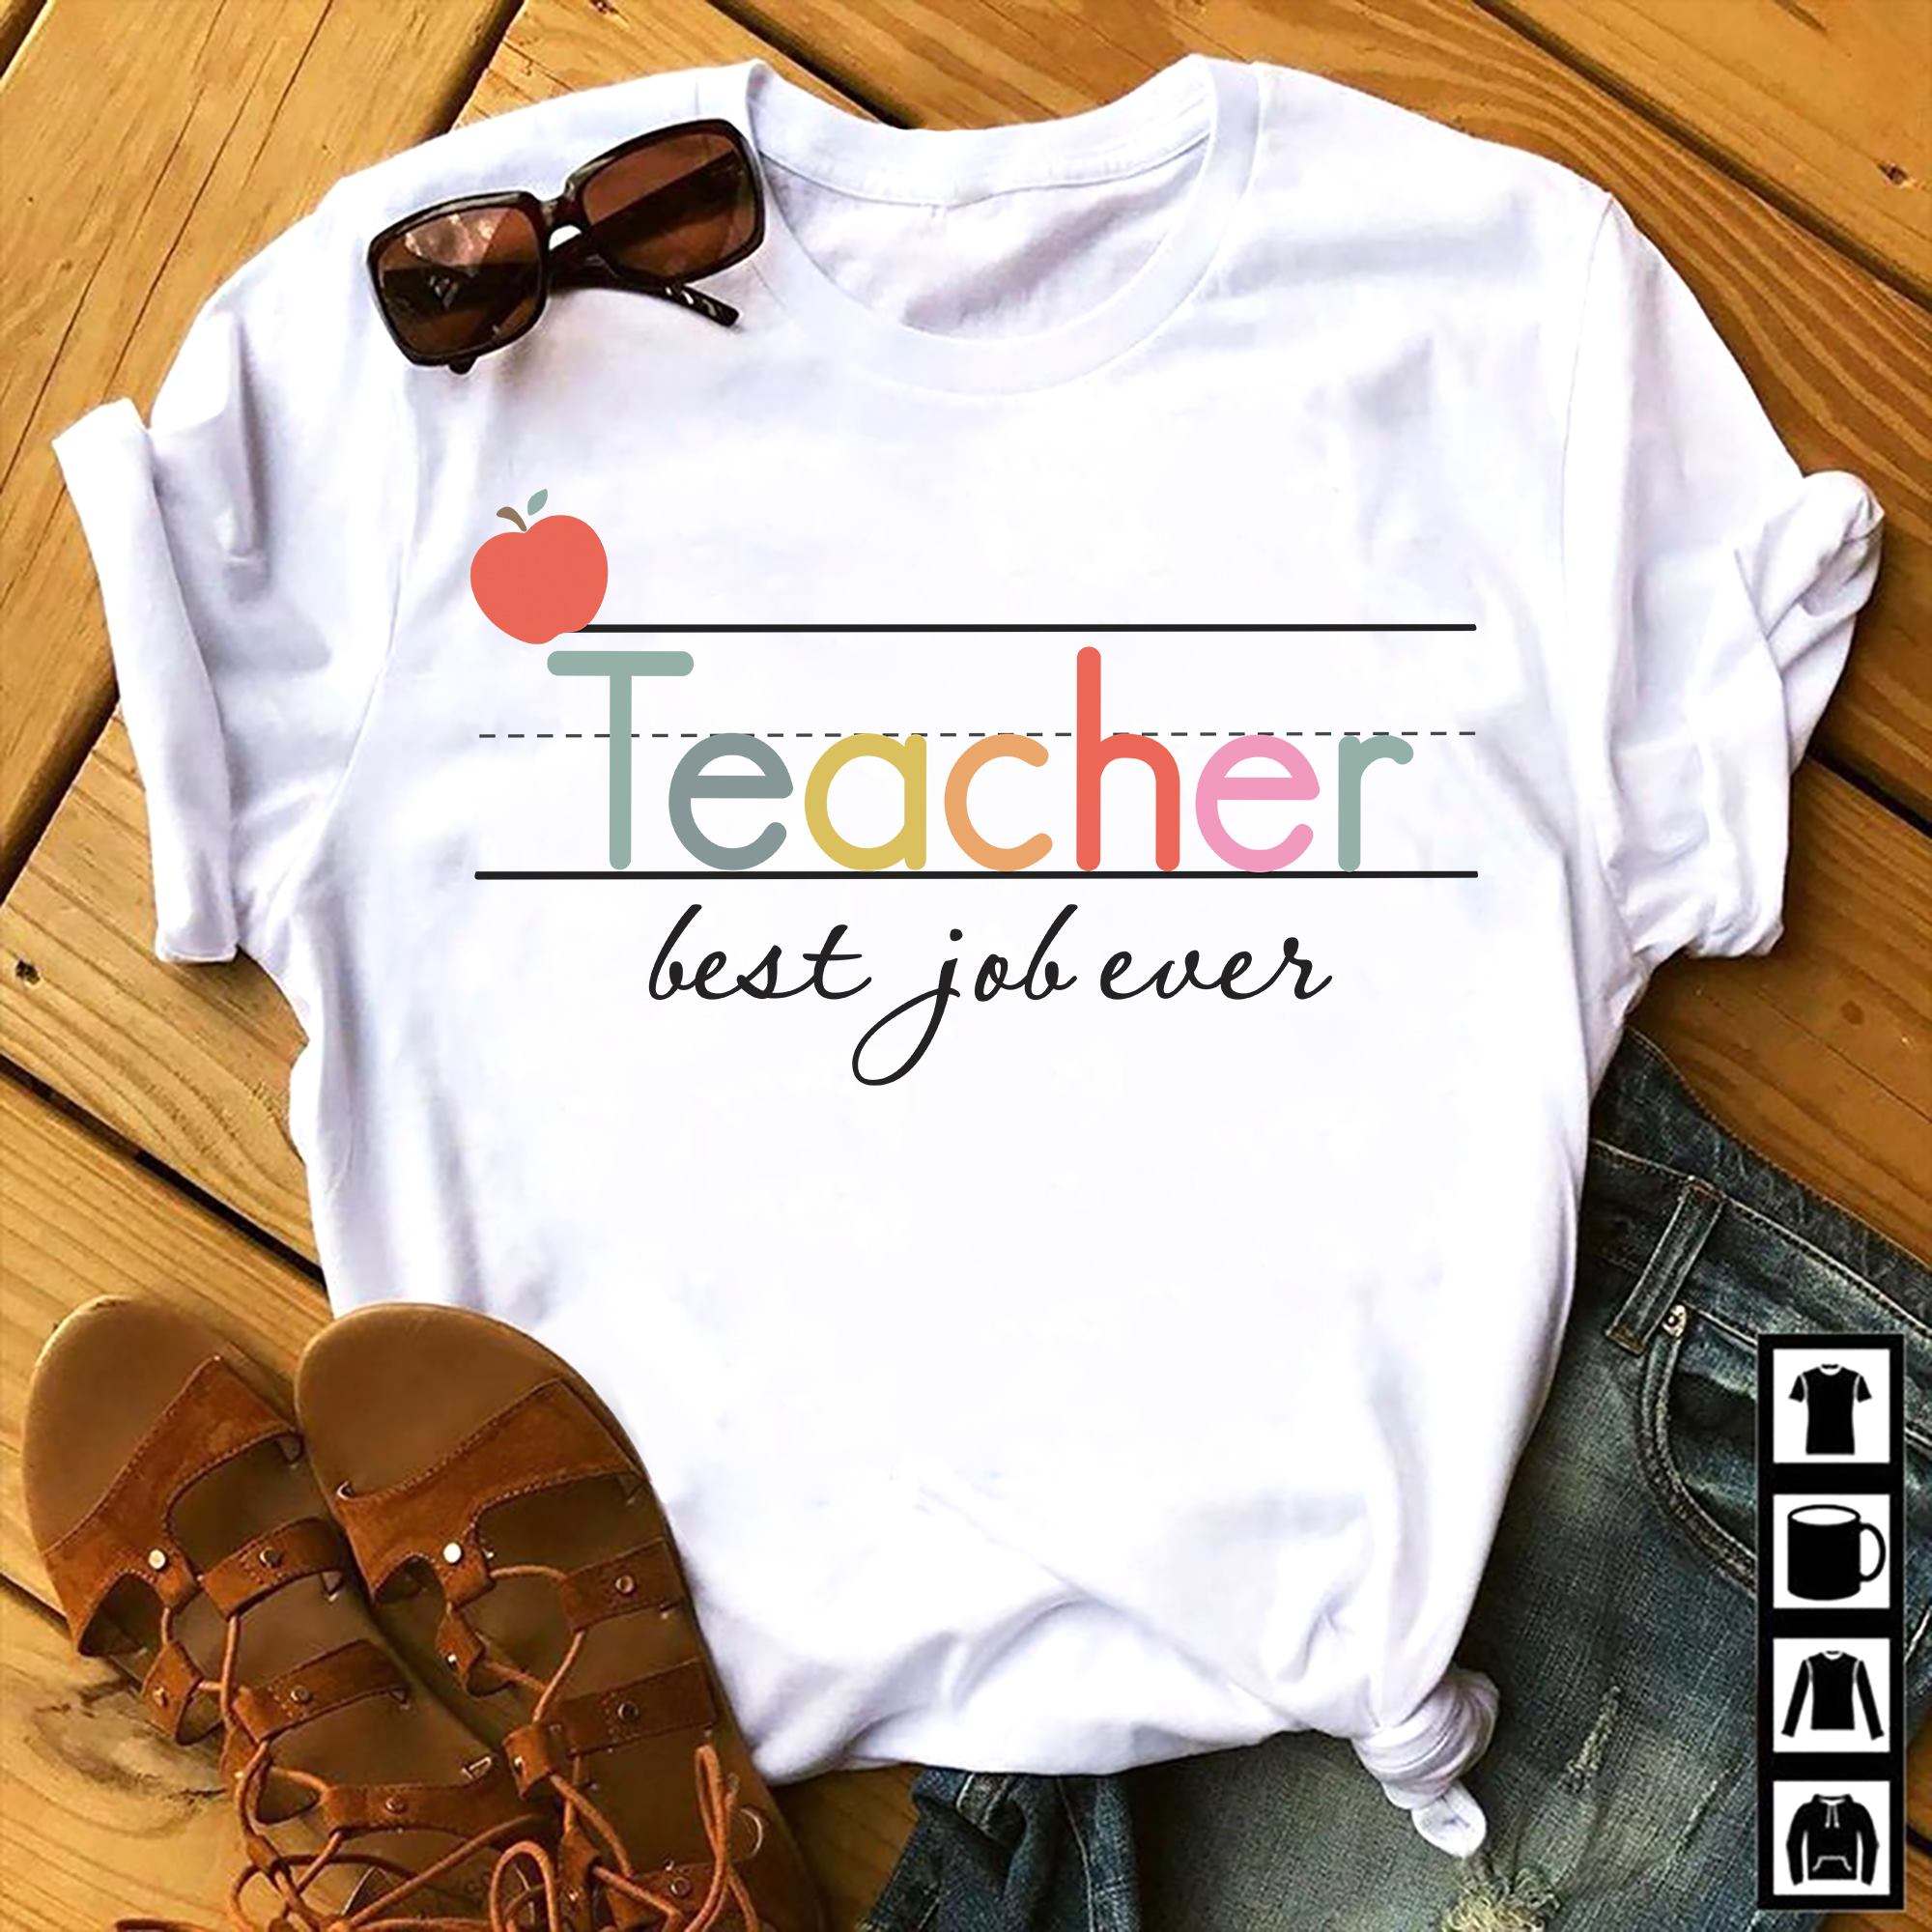 Teacher best job every - Teacher the job, teacher life